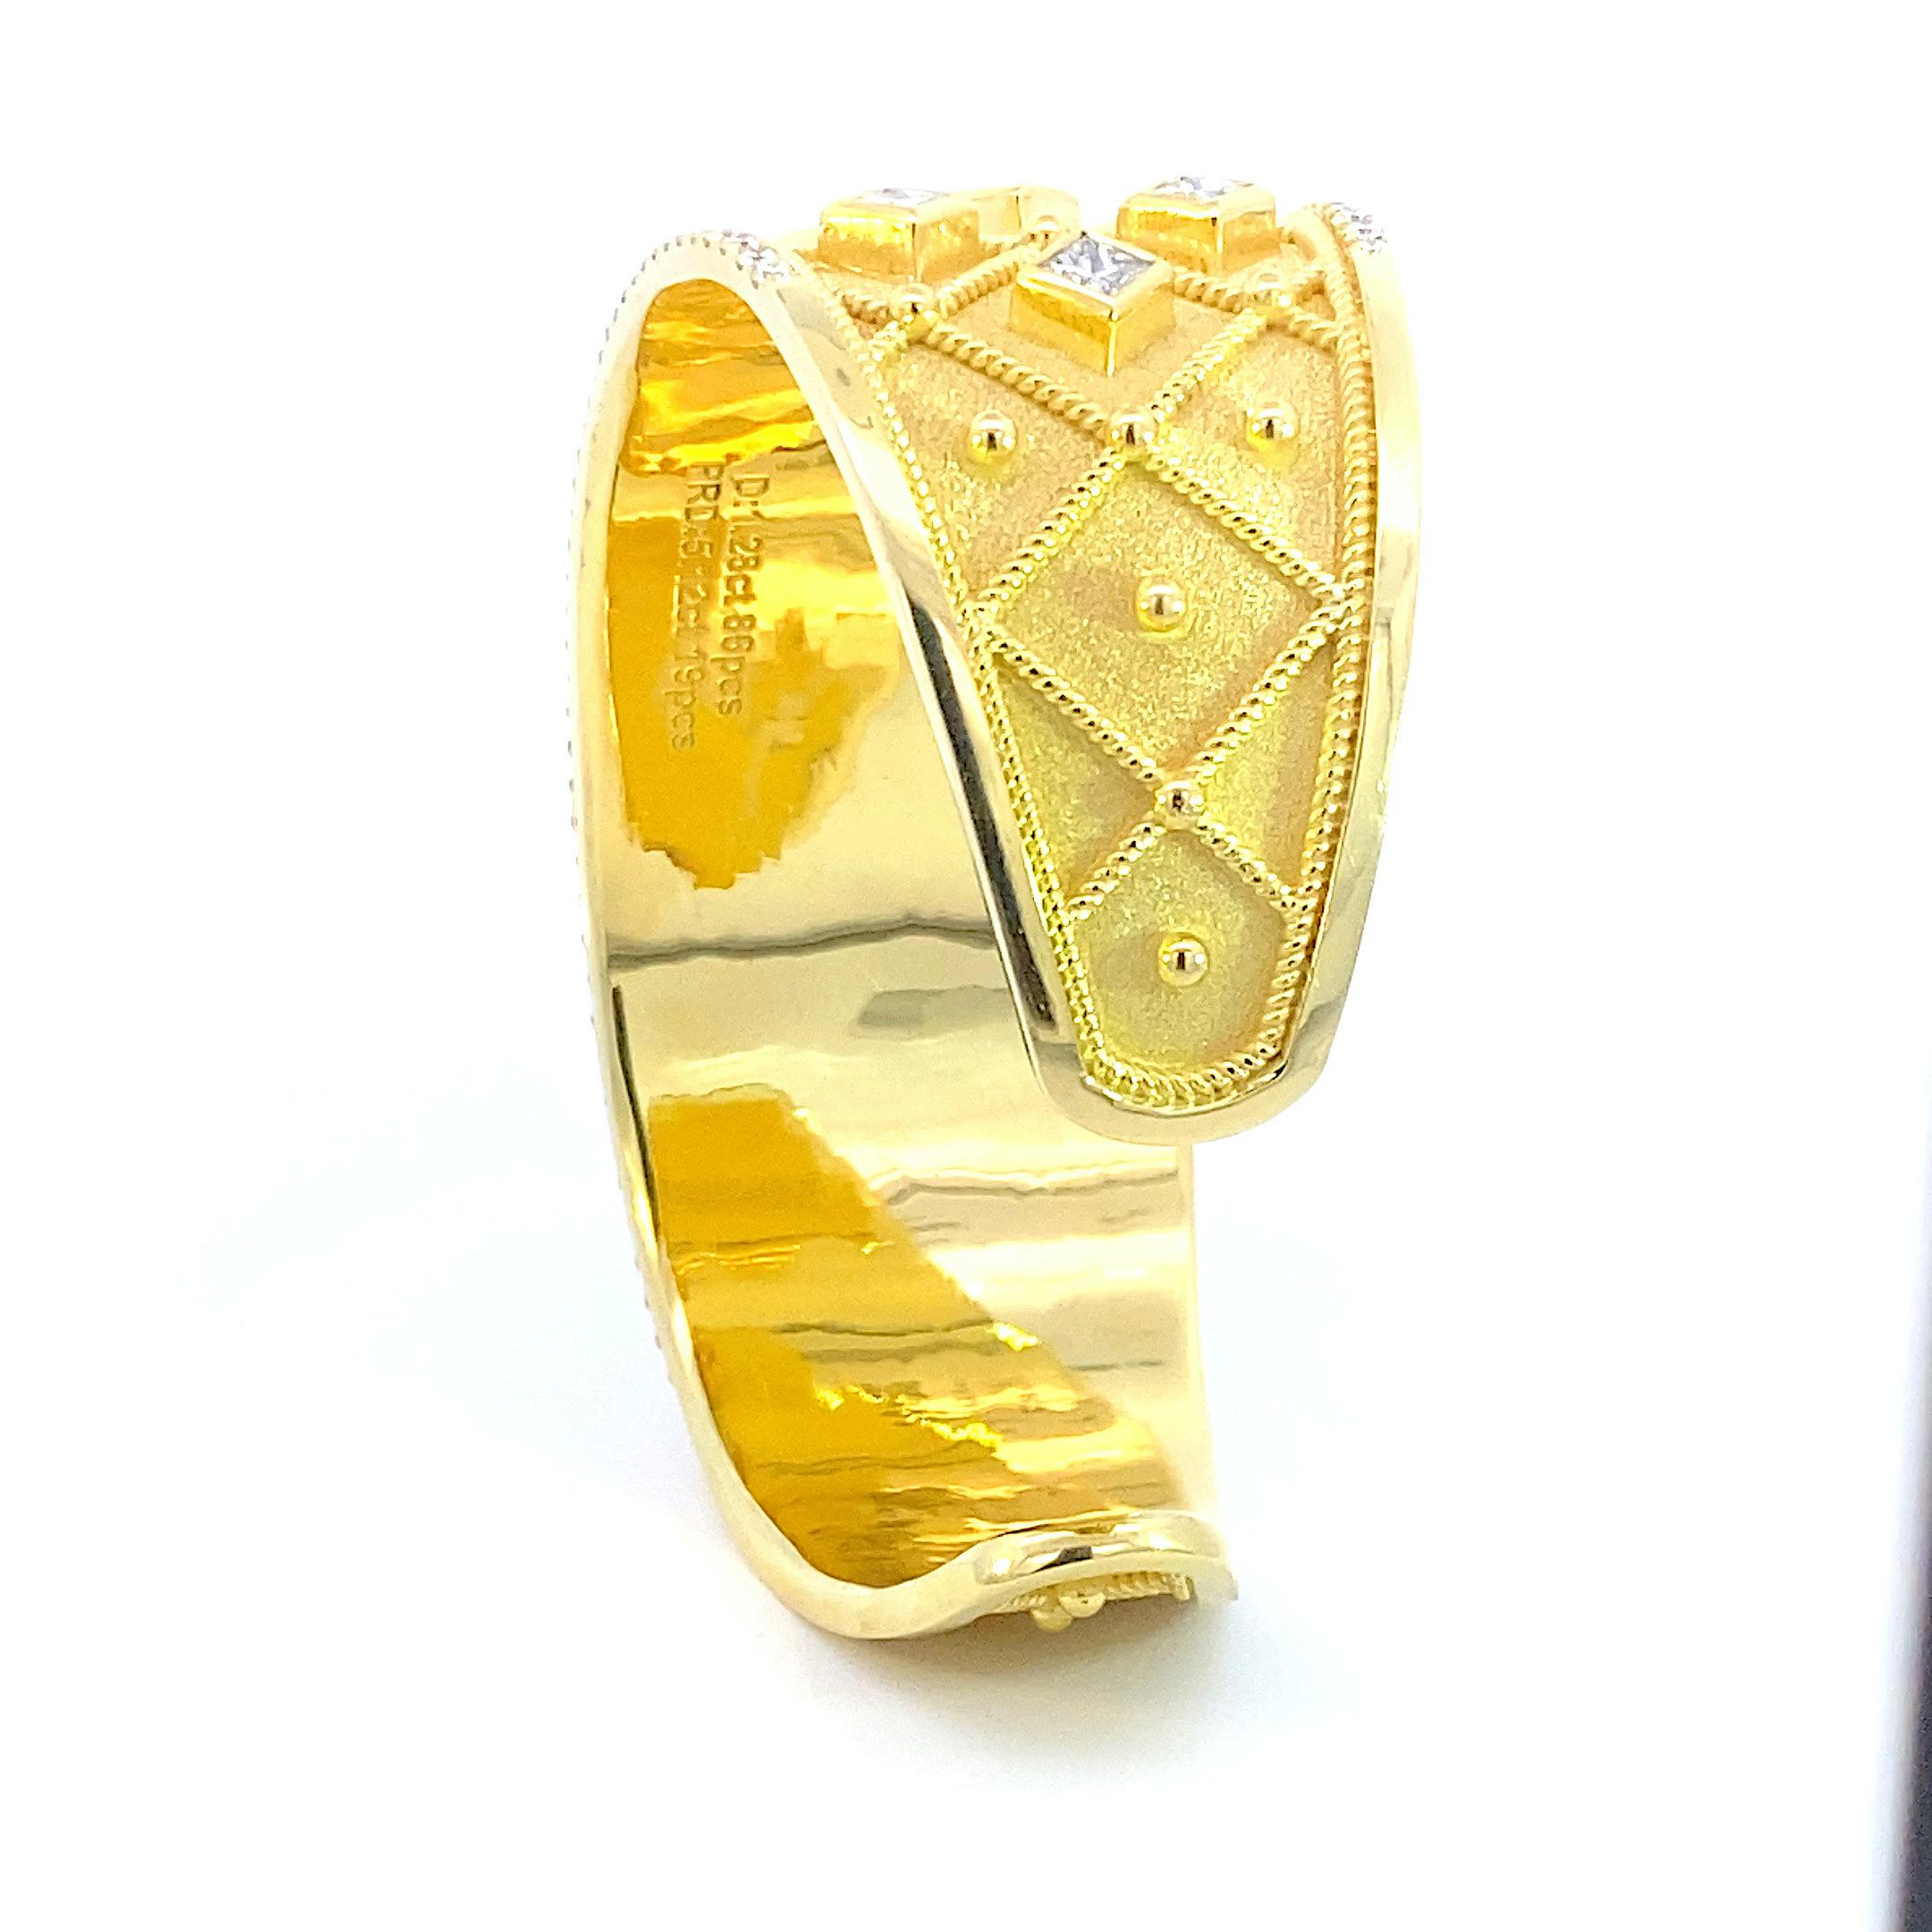 S.Georgios Designer Unique Armband handgefertigt aus 82,40 Gramm massivem 18 Karat Gelbgold im byzantinischen Stil mit einer einzigartigen Samttextur auf dem Hintergrund und Granulationsarbeit - gedrehte Drähte und Perlen im modernen Design.
Das